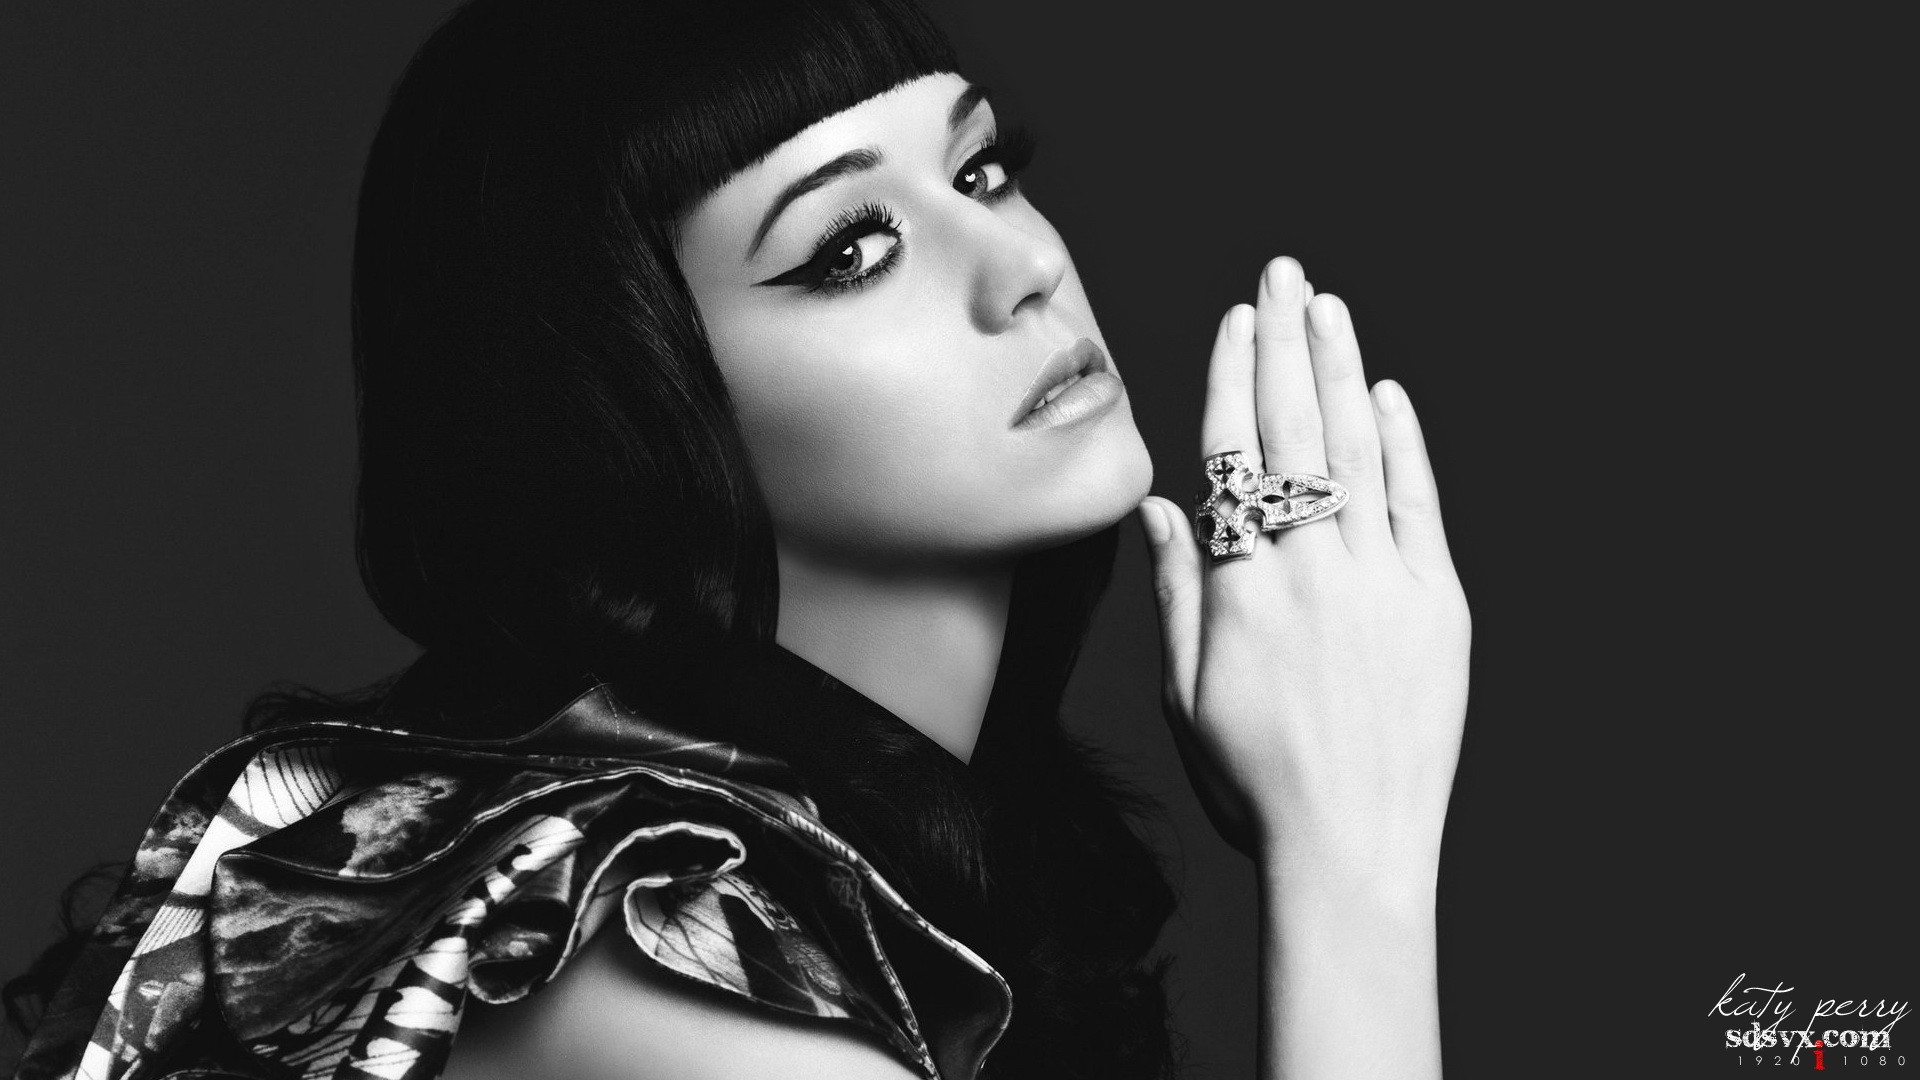 women, Katy Perry, models - desktop wallpaper